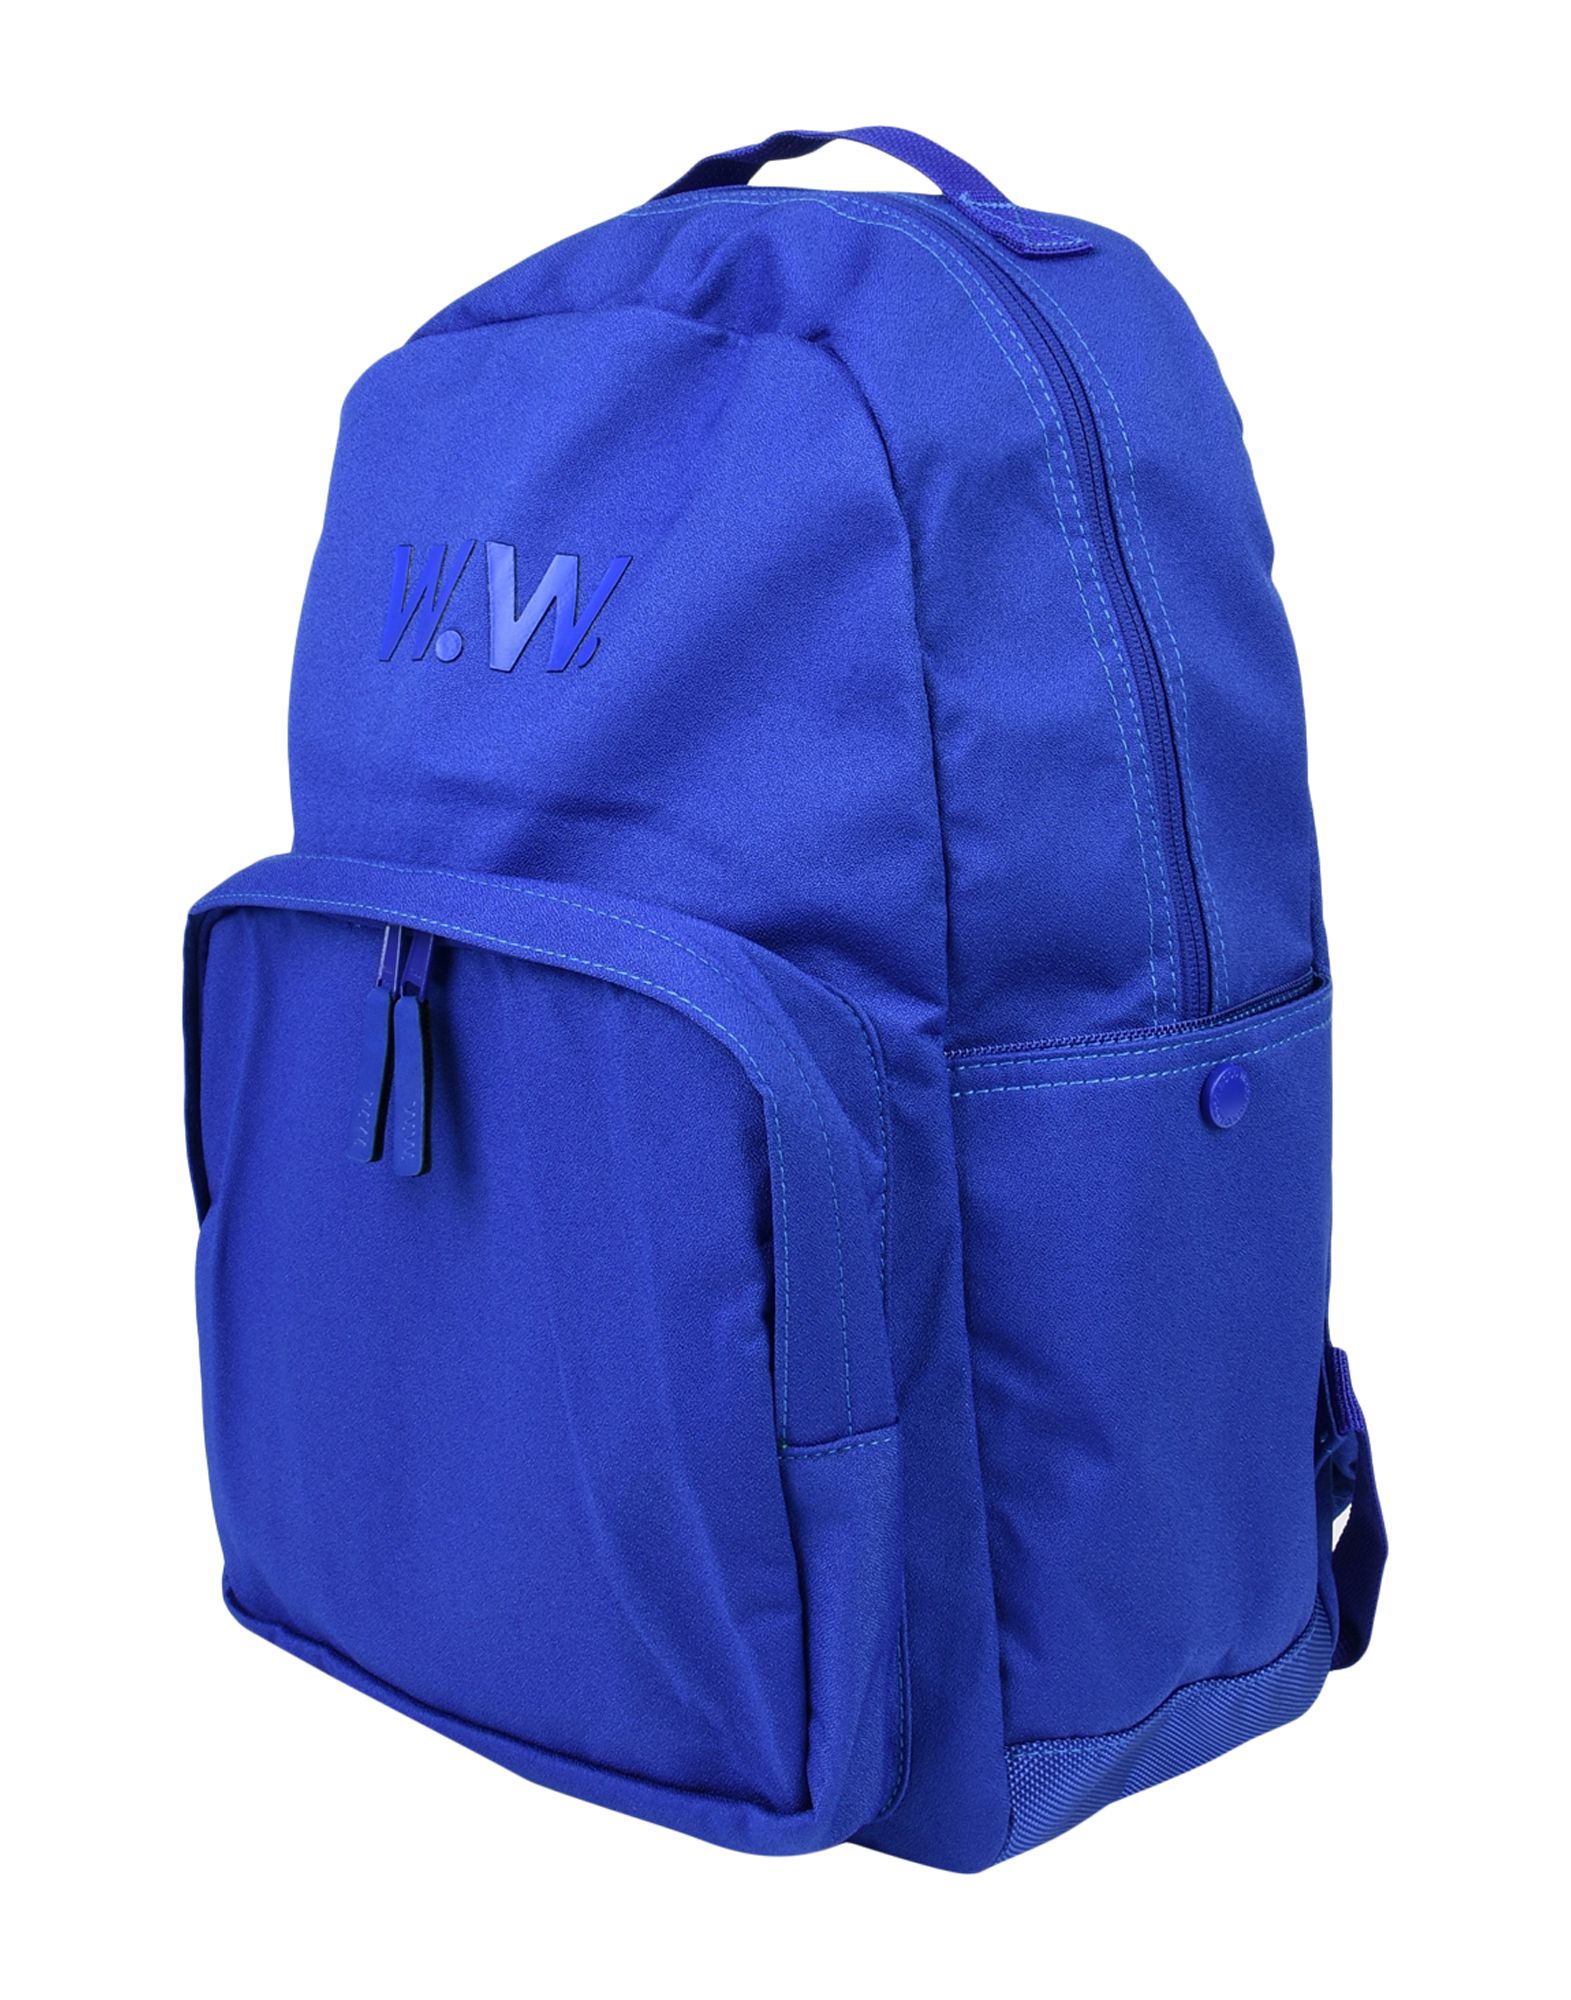 Деловая сумка  - Синий цвет